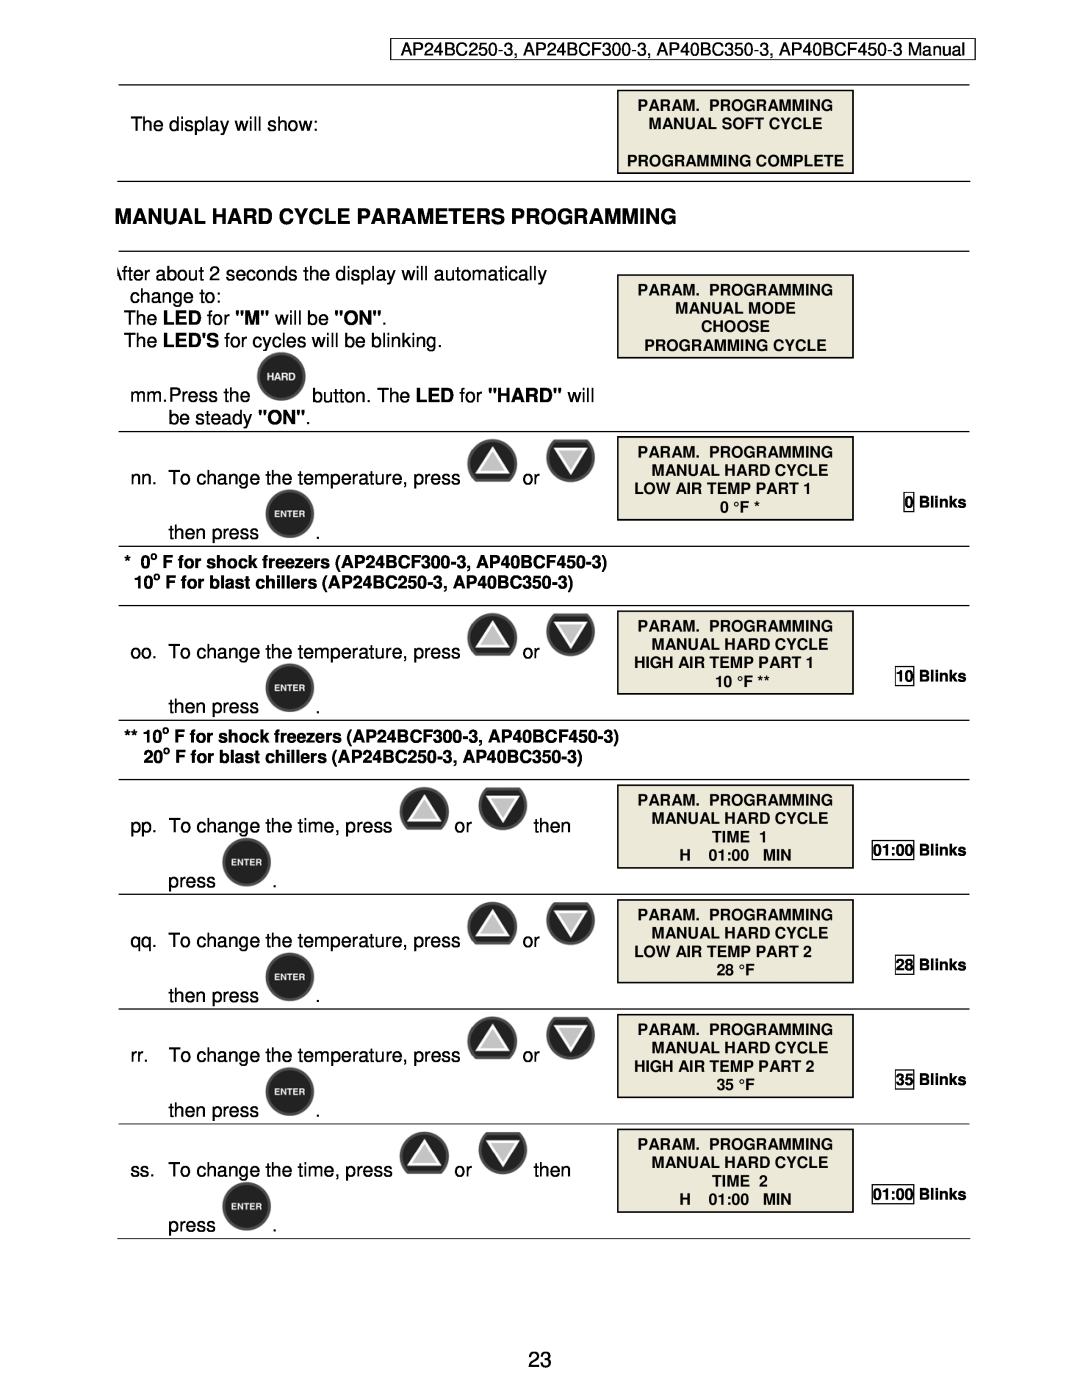 American Panel AP24BC250-3 user manual Manual Hard Cycle Parameters Programming 